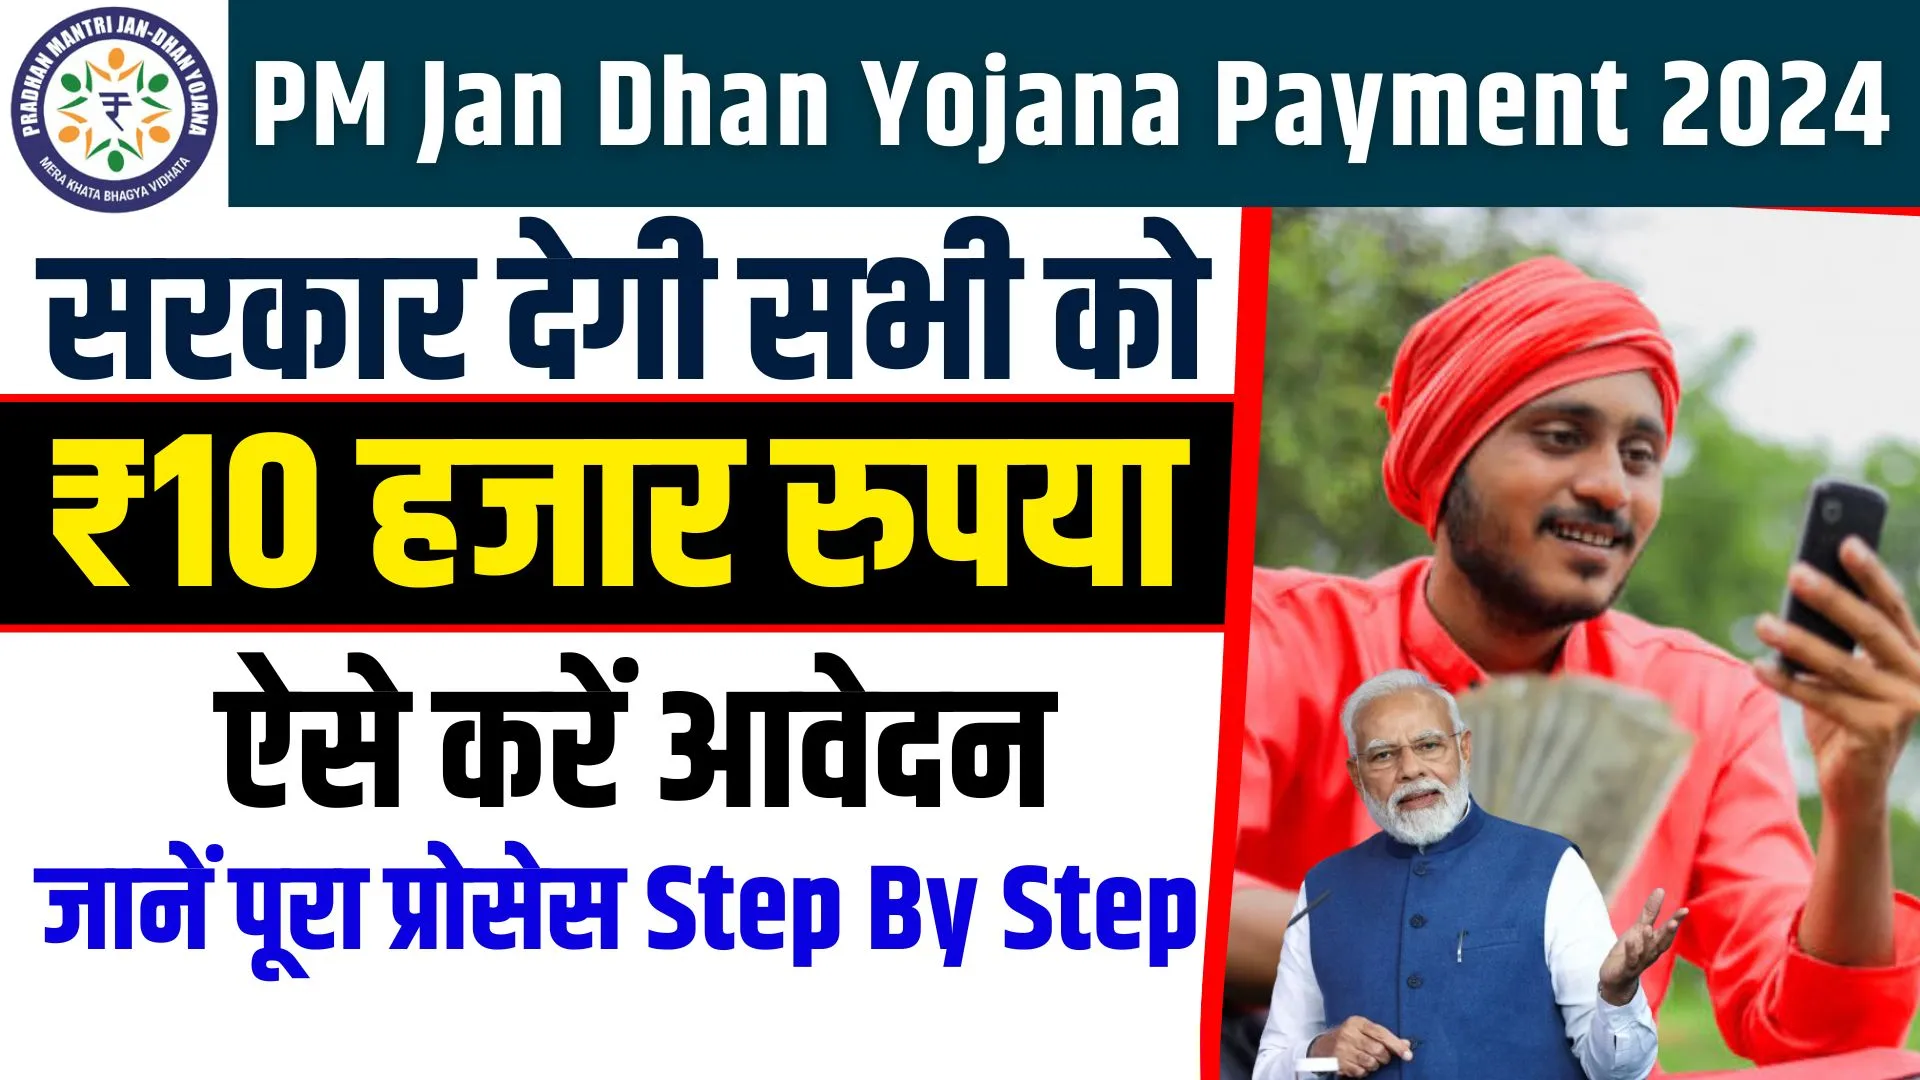 PM Jan Dhan Yojana Payment 2024: पीएम जन धन योजना के तहत सरकार देगी सभी को ₹10 हजार, ऐसे करें आवेदन जानें पूरा प्रोसेस 